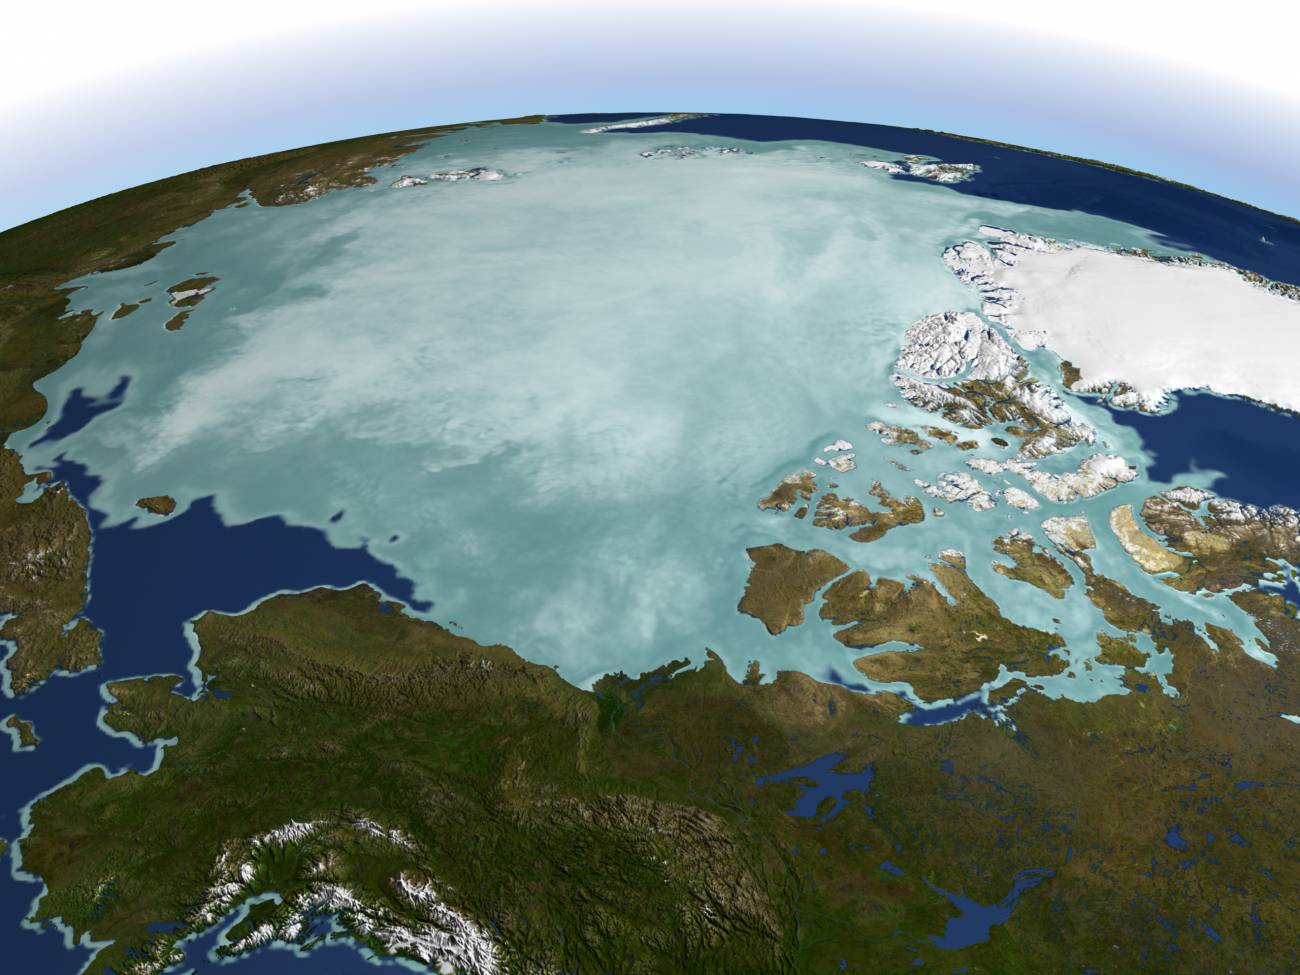 Tío o señor Ventana mundial nacionalismo El polo norte casi no tenía hielo hace cuatro millones de años